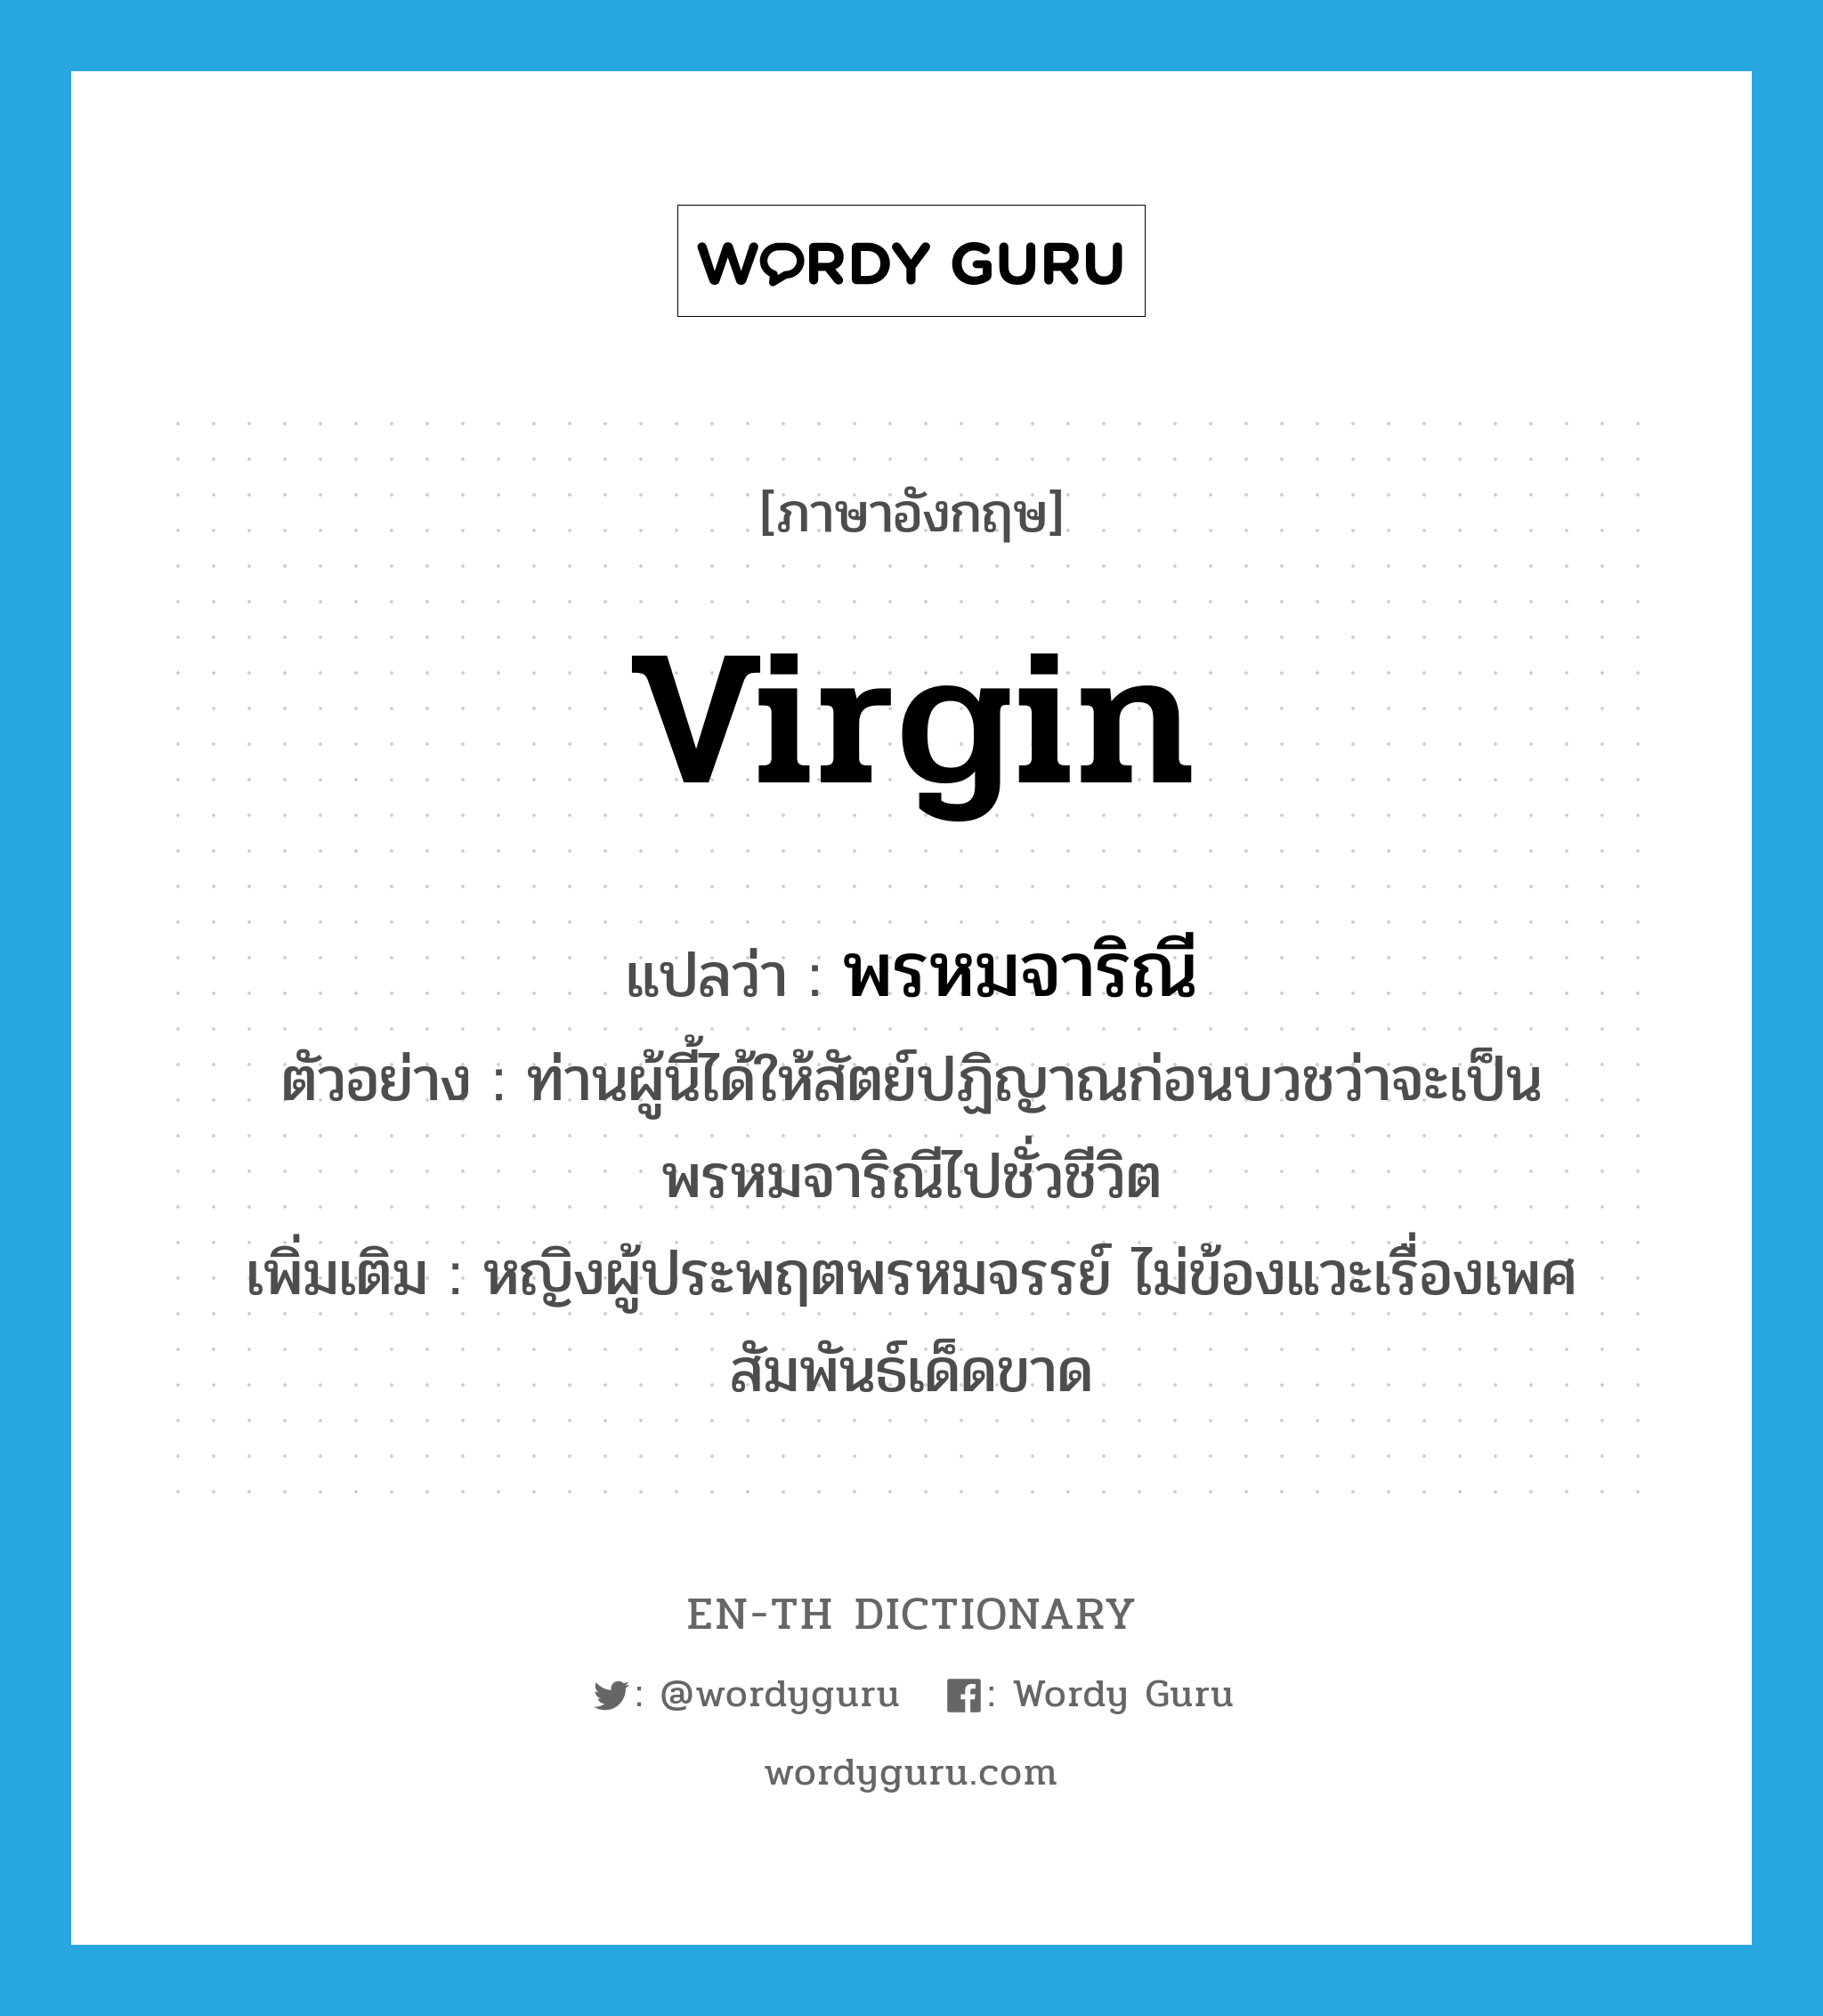 virgin แปลว่า?, คำศัพท์ภาษาอังกฤษ virgin แปลว่า พรหมจาริณี ประเภท N ตัวอย่าง ท่านผู้นี้ได้ให้สัตย์ปฏิญาณก่อนบวชว่าจะเป็นพรหมจาริณีไปชั่วชีวิต เพิ่มเติม หญิงผู้ประพฤตพรหมจรรย์ ไม่ข้องแวะเรื่องเพศสัมพันธ์เด็ดขาด หมวด N